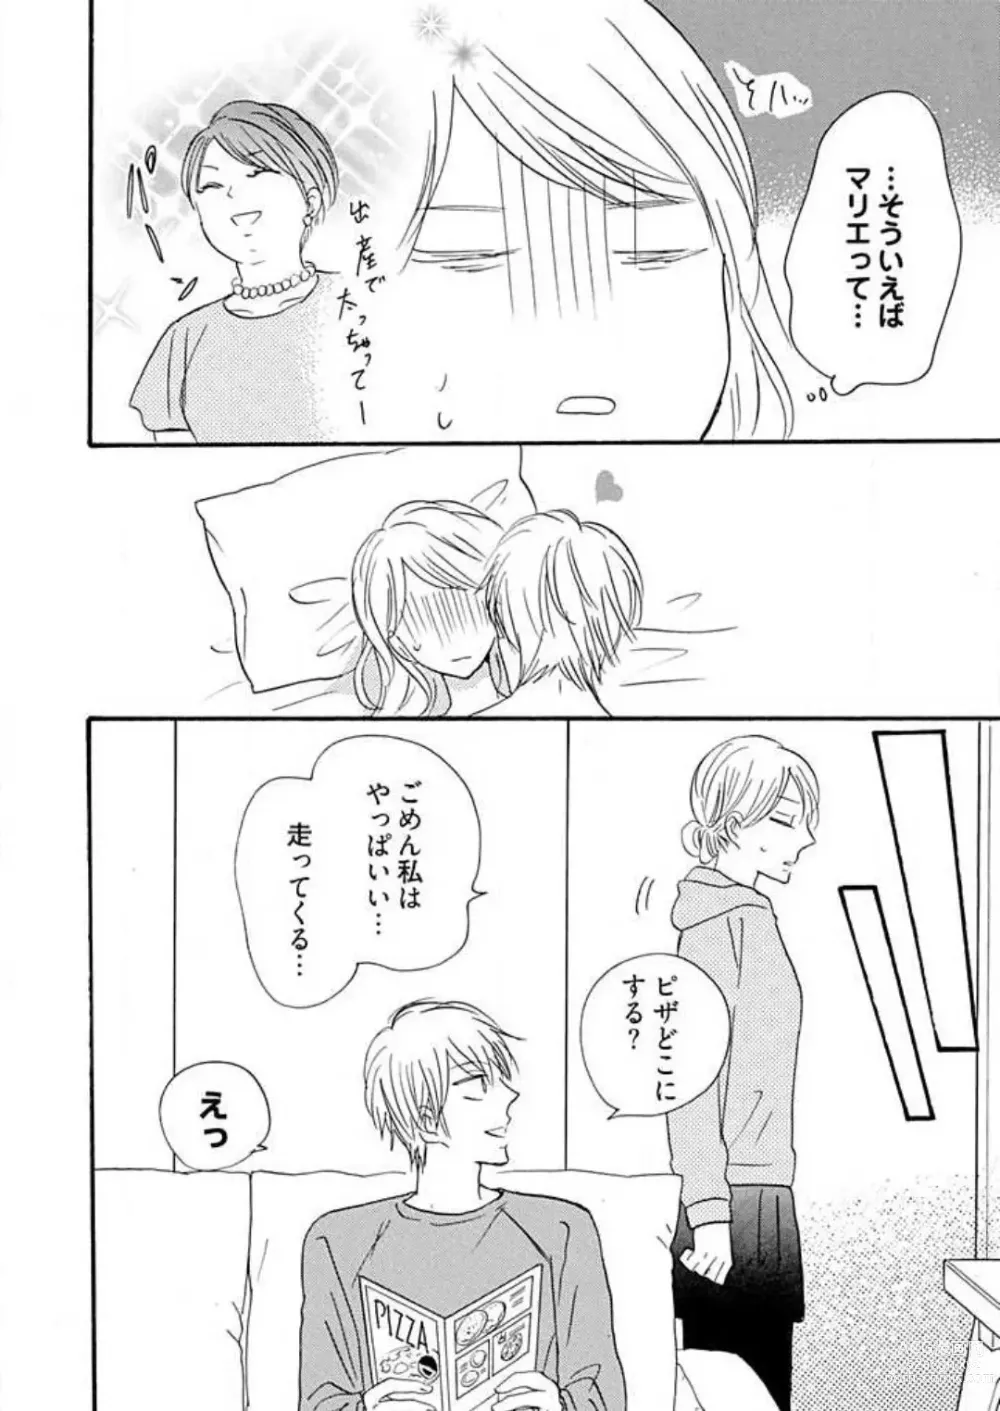 Page 321 of manga Osananajimi wa Yokozuna-sama! 1-13